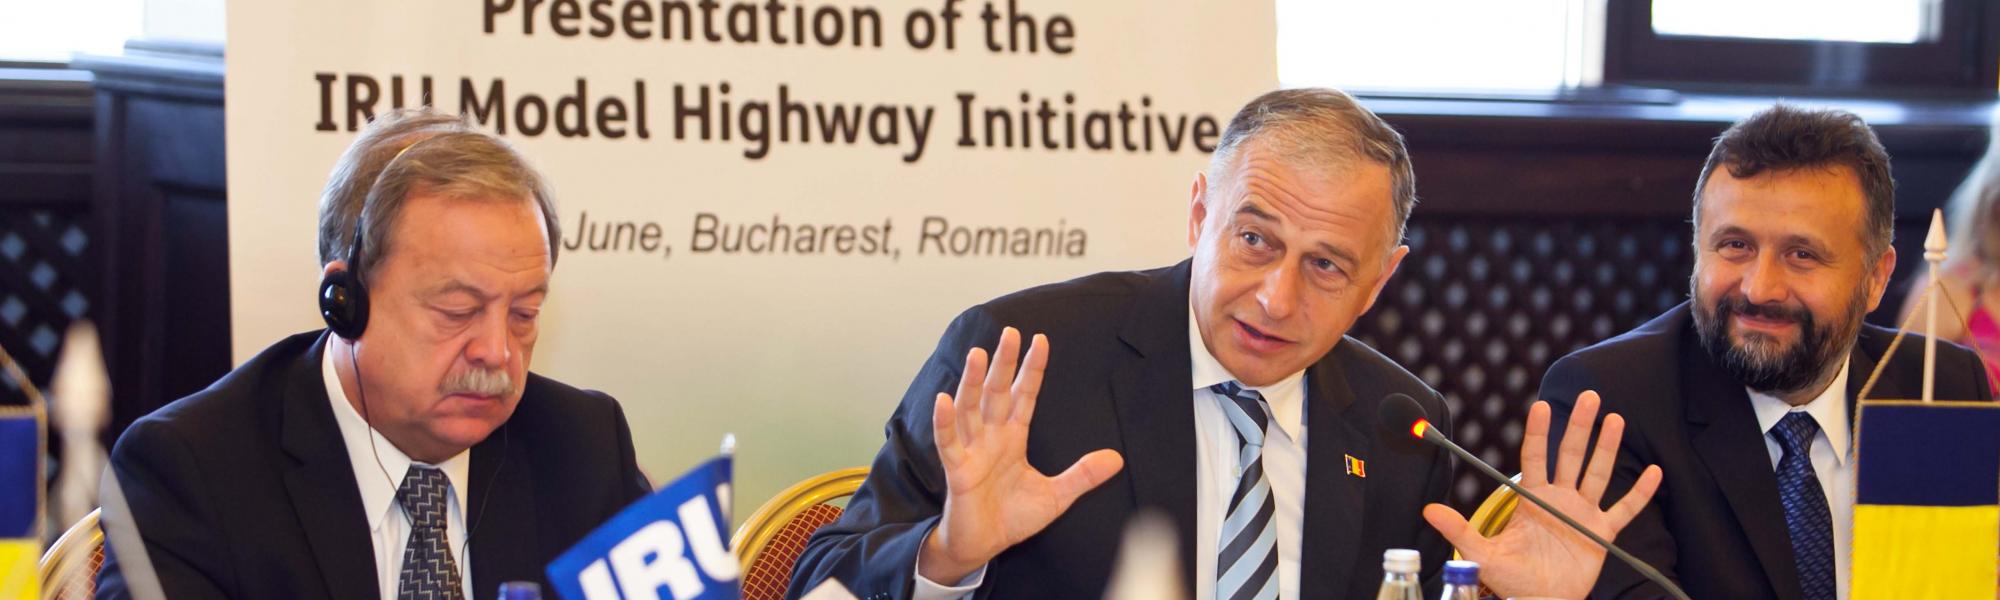 IRU выступает с презентацией о преимуществах Модельного шоссе для Евроазиатских транспортных связей перед представителями органов государственной власти Румынии